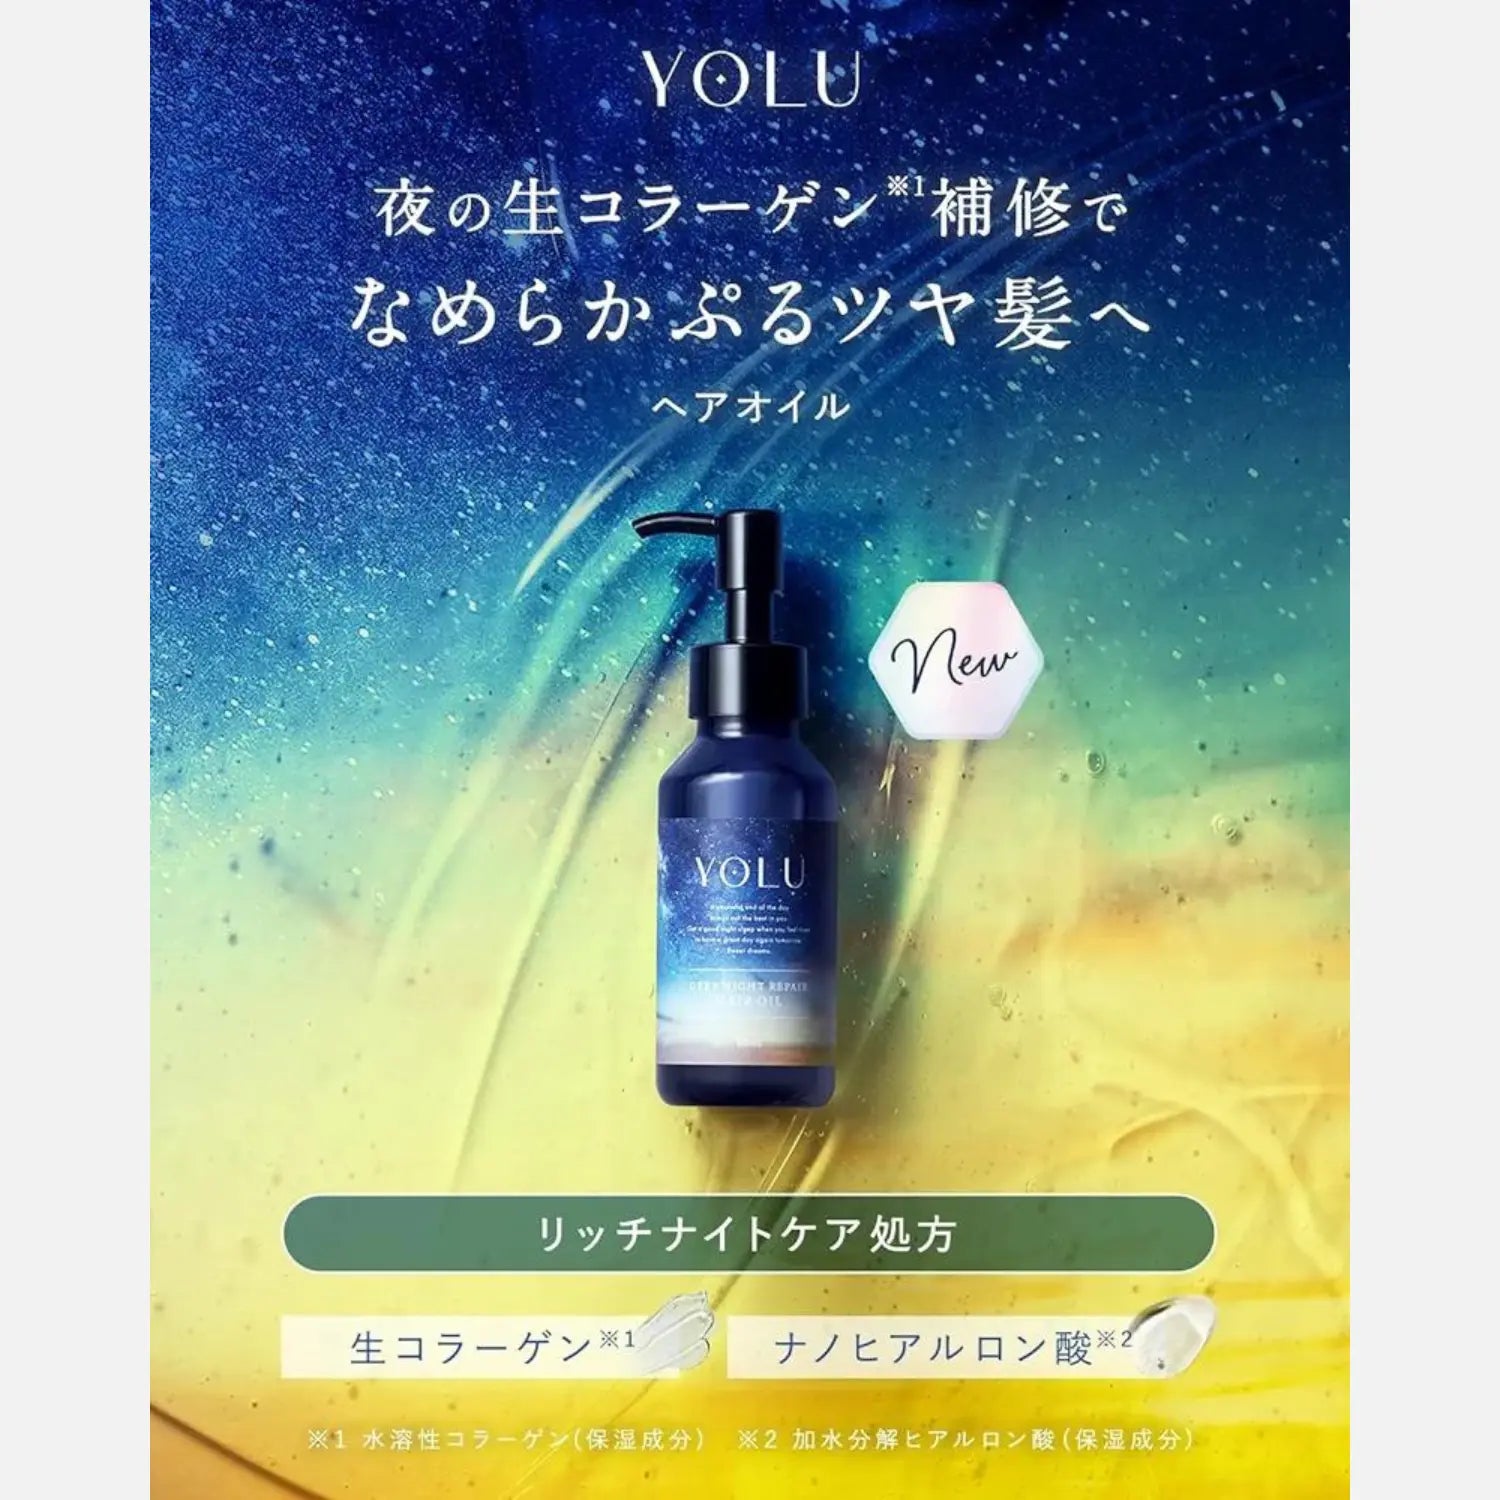 YOLU Deep Night Repair Hair Oil 80ml - Buy Me Japan